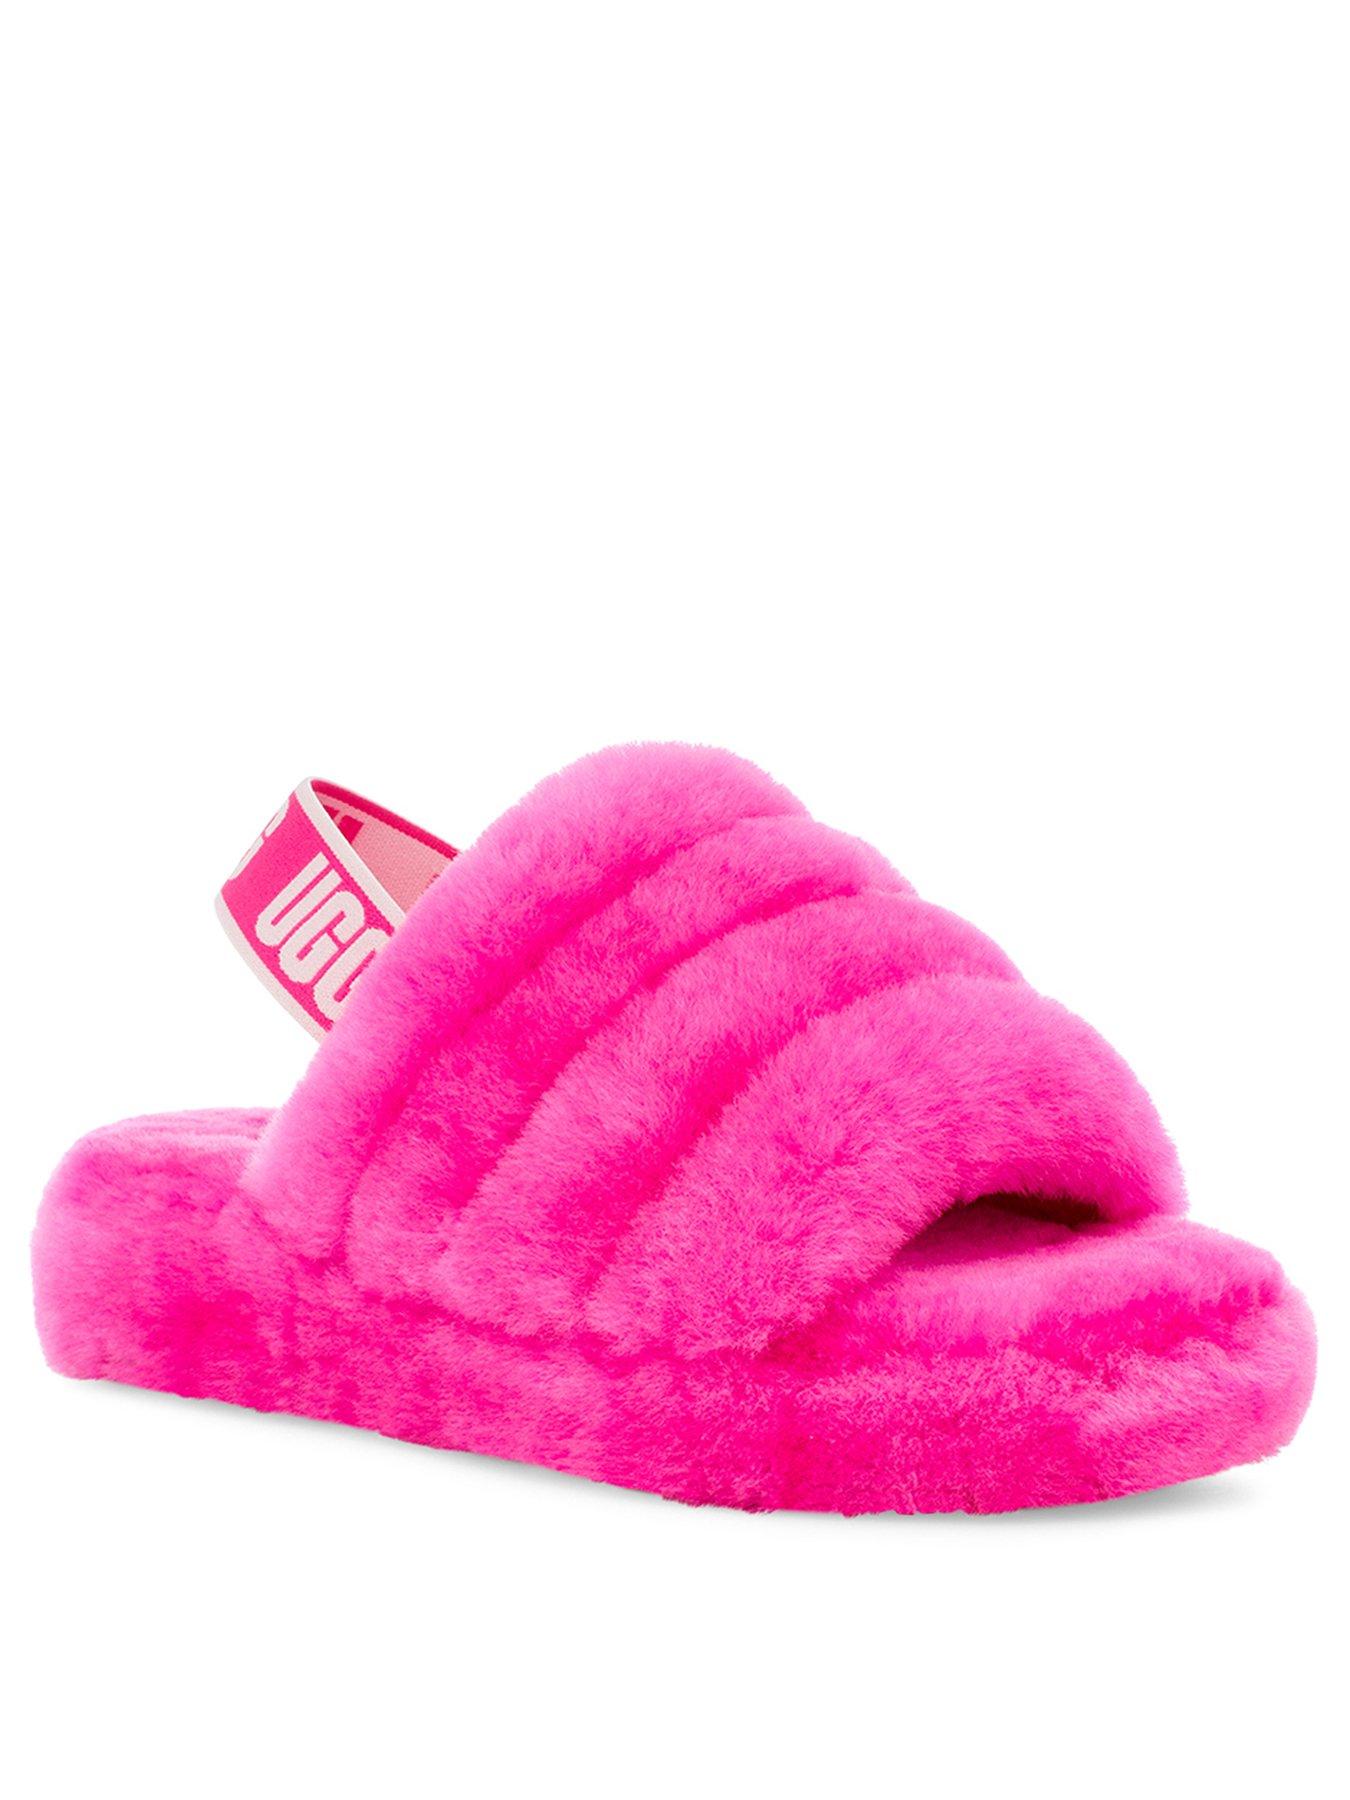 ugg pink slides